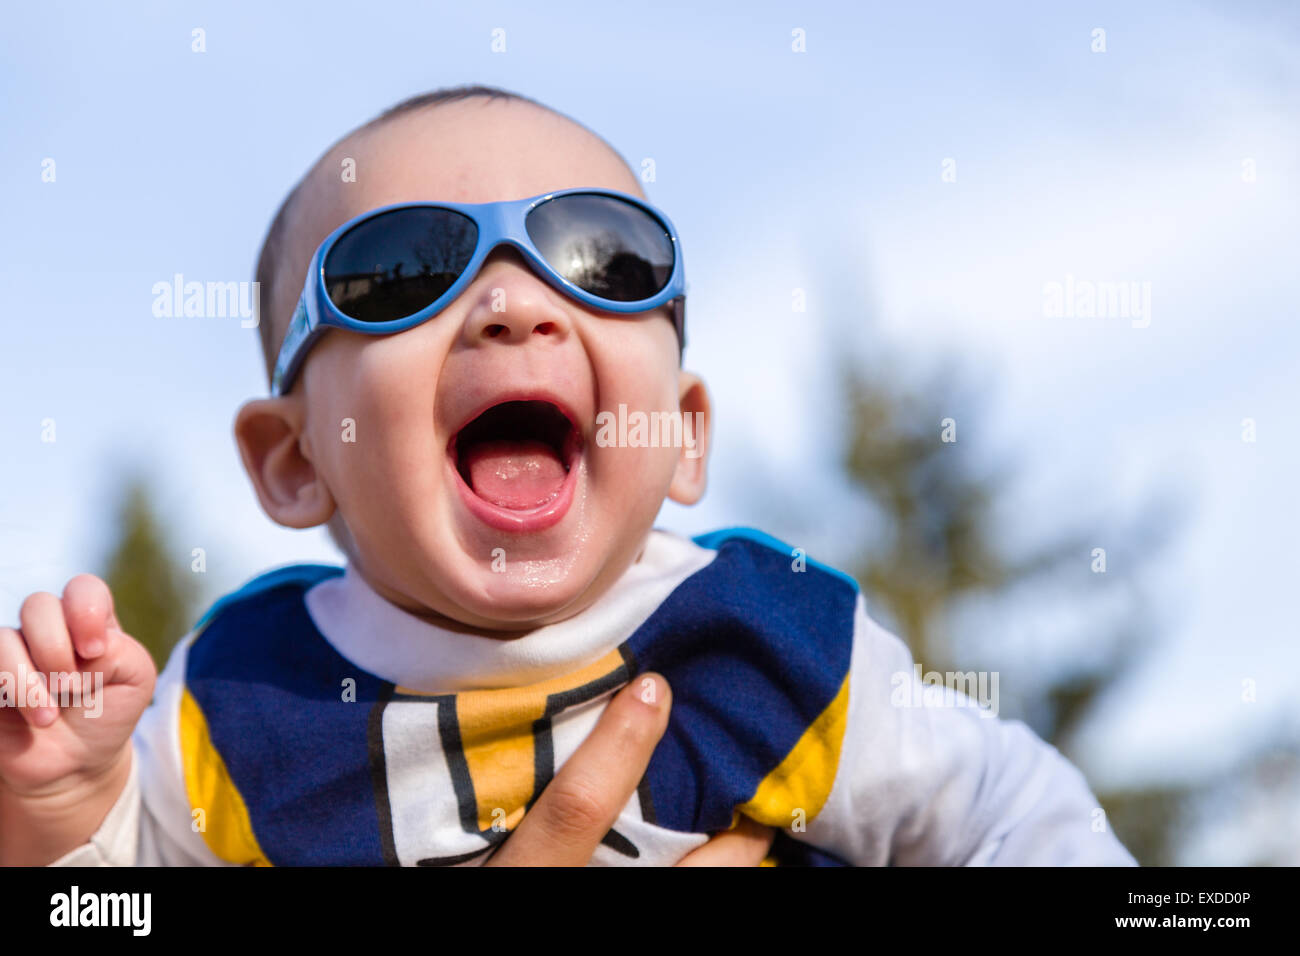 Carino 6 mesi baby con luce marrone capelli in bianco, blu e bruno camicia a maniche lunghe indossando googles blu è abbracciato e tenuto da sua mamma: egli sembra molto felice e sorrisi Foto Stock